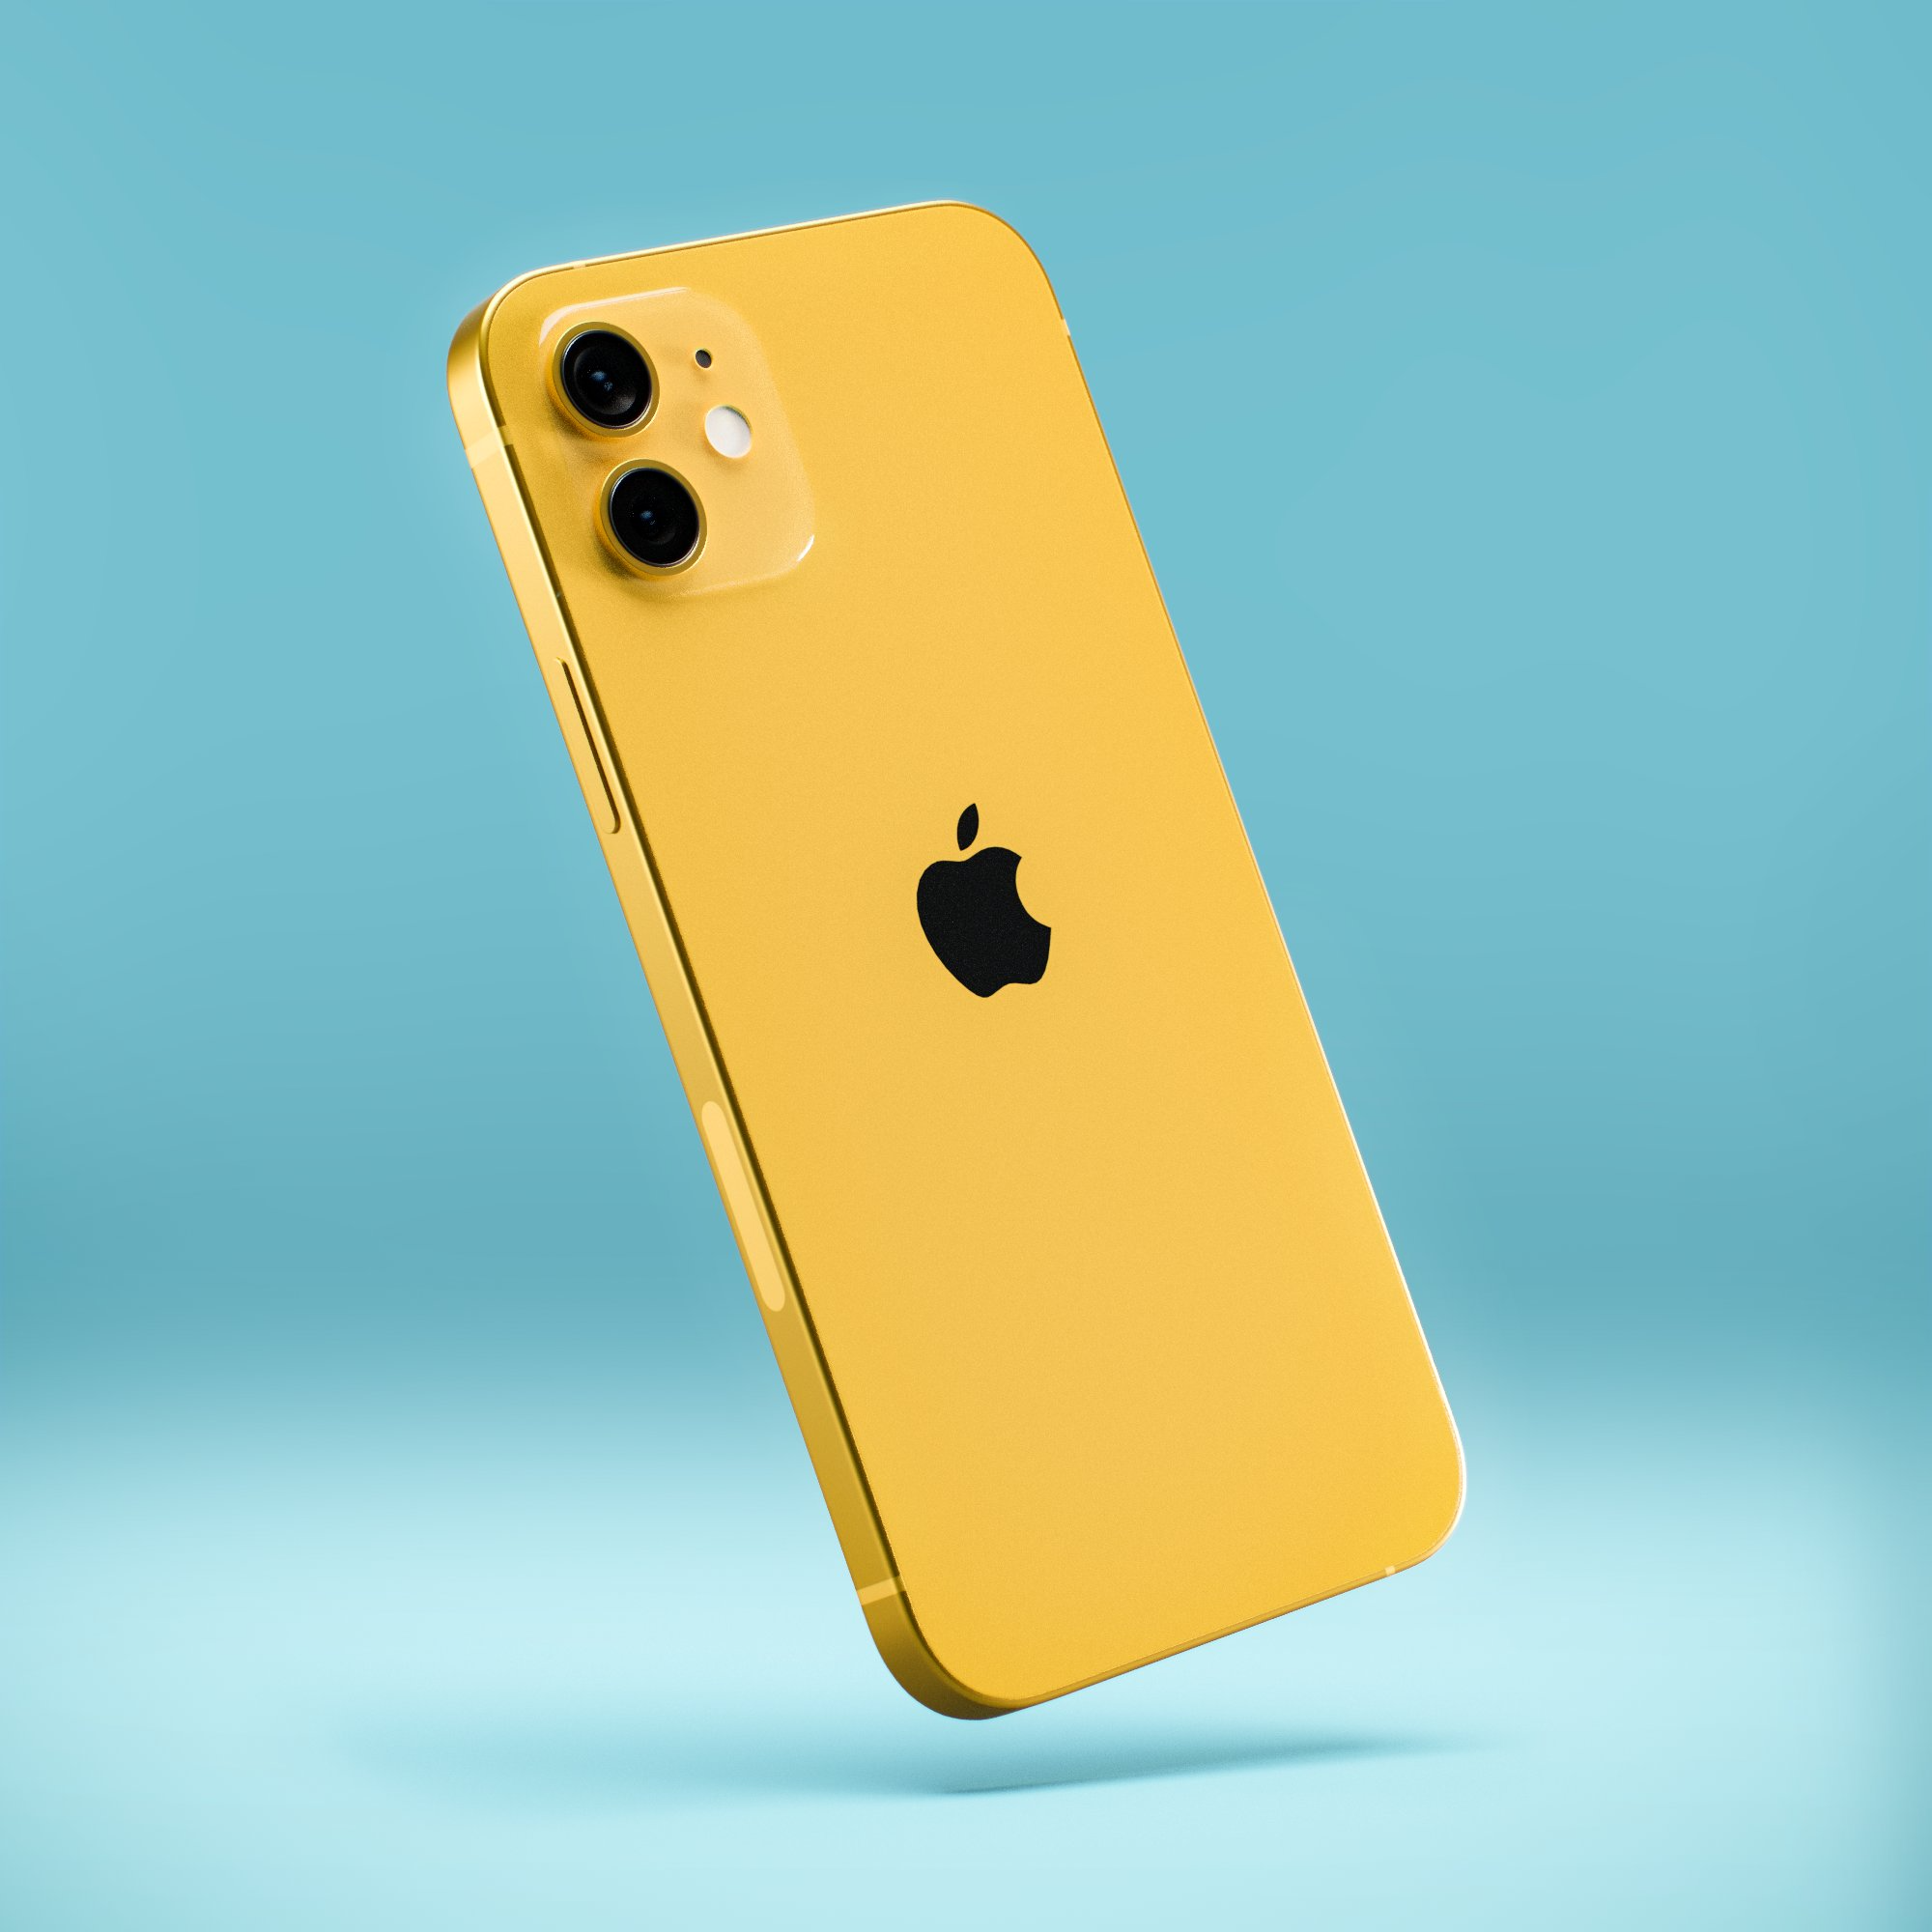 Ngắm loạt concept iPhone 13 với màu sắc nổi bật, nhìn là muốn chốt đơn ngay! - Ảnh 4.